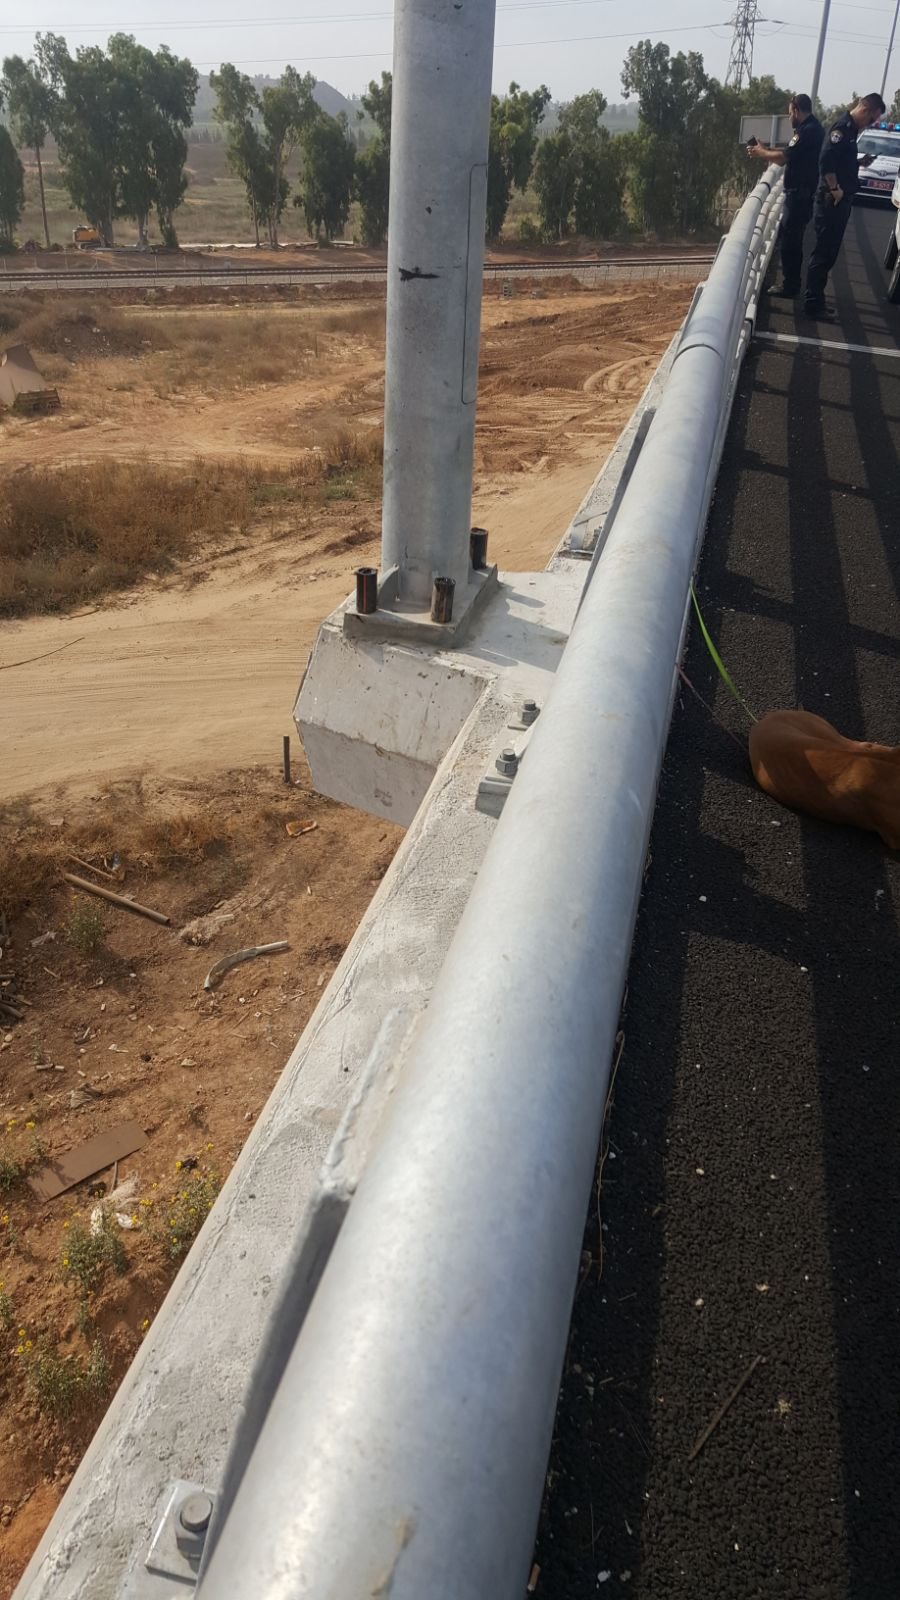 بالصور: شابة تحاول الانتحار قفزًا عن جسر في مركز البلاد-2